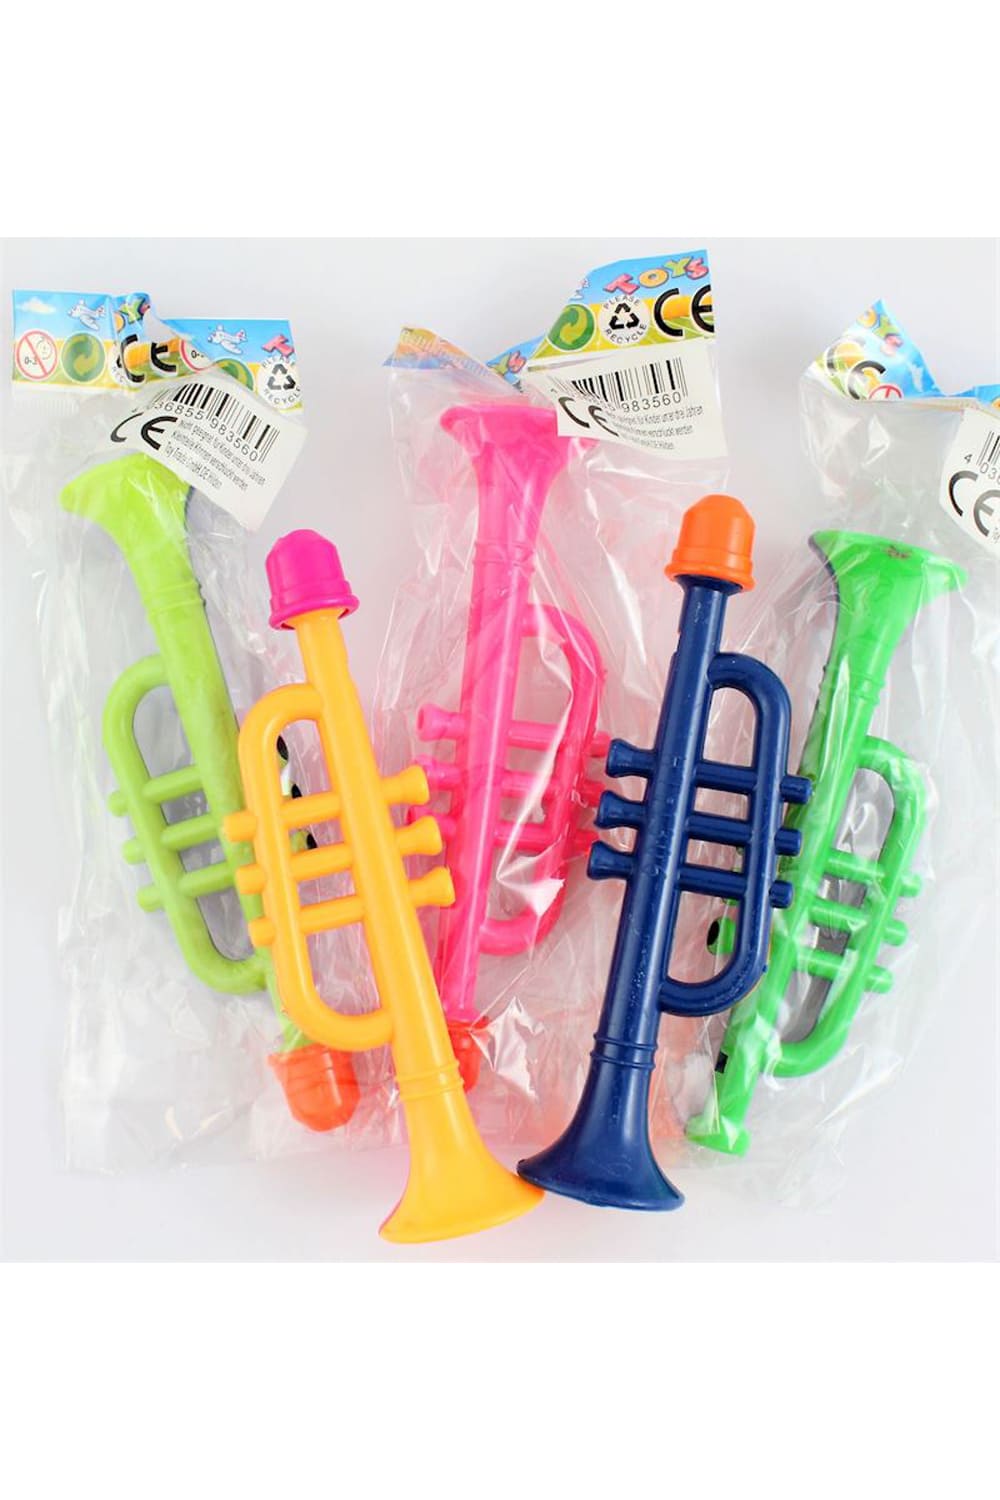 Trompete fuer Kinder ca. 13 cm gross. Musikinstrument in den farebn blau, gelb, grün, rosa.